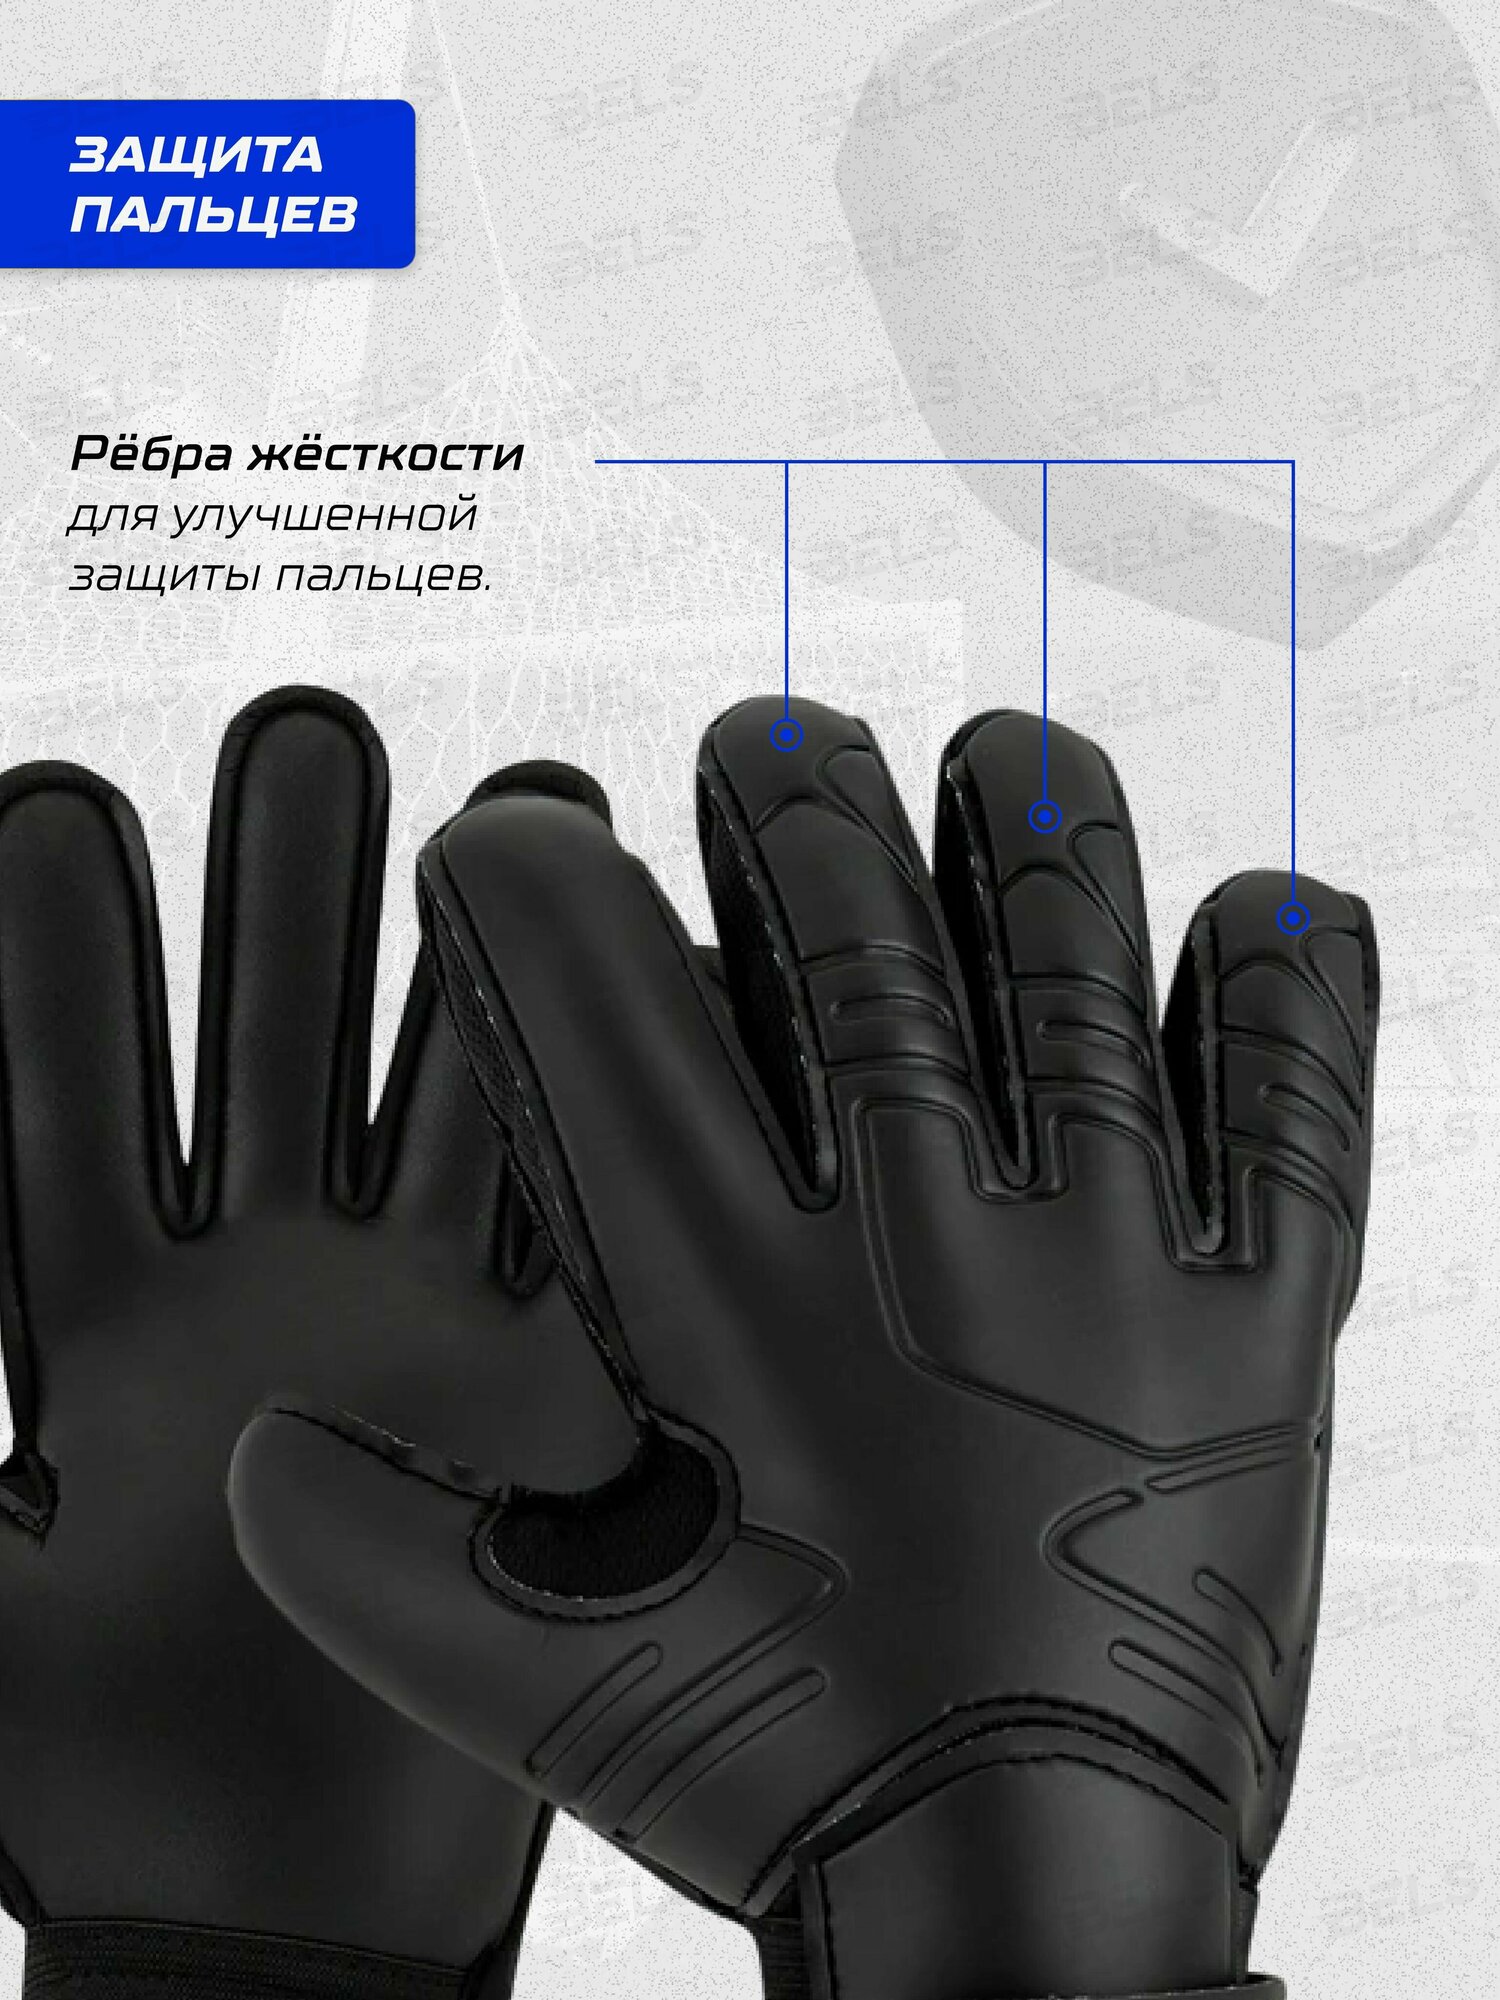 Вратарские перчатки для взрослых и детей, футбольные перчатки, размер 10